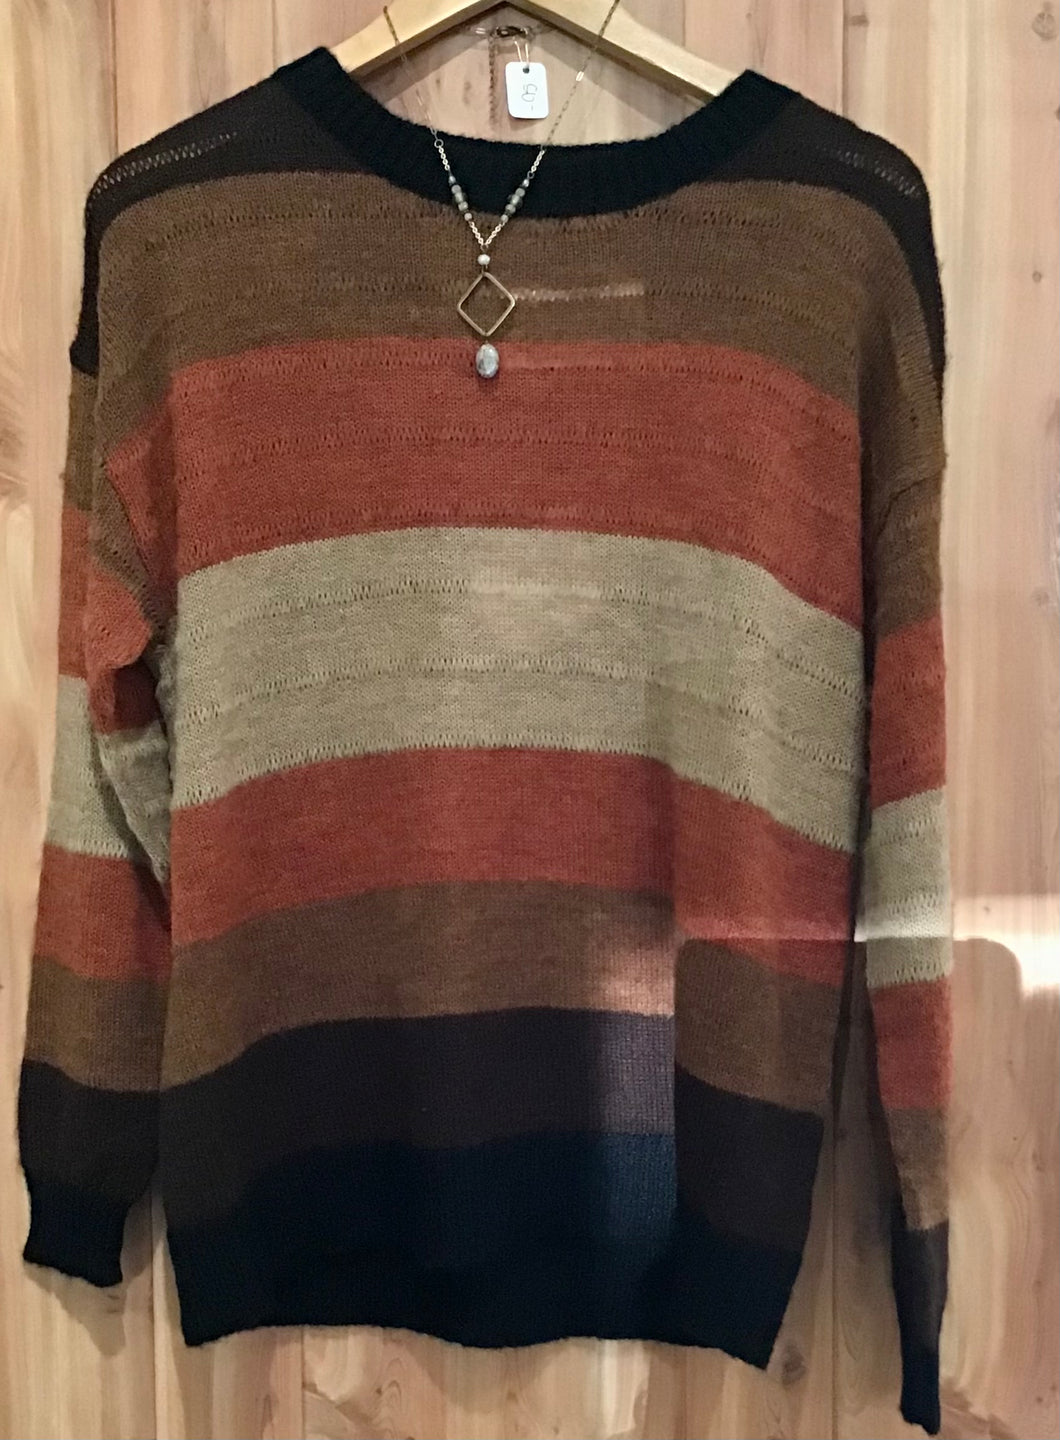 McKensi Sweater